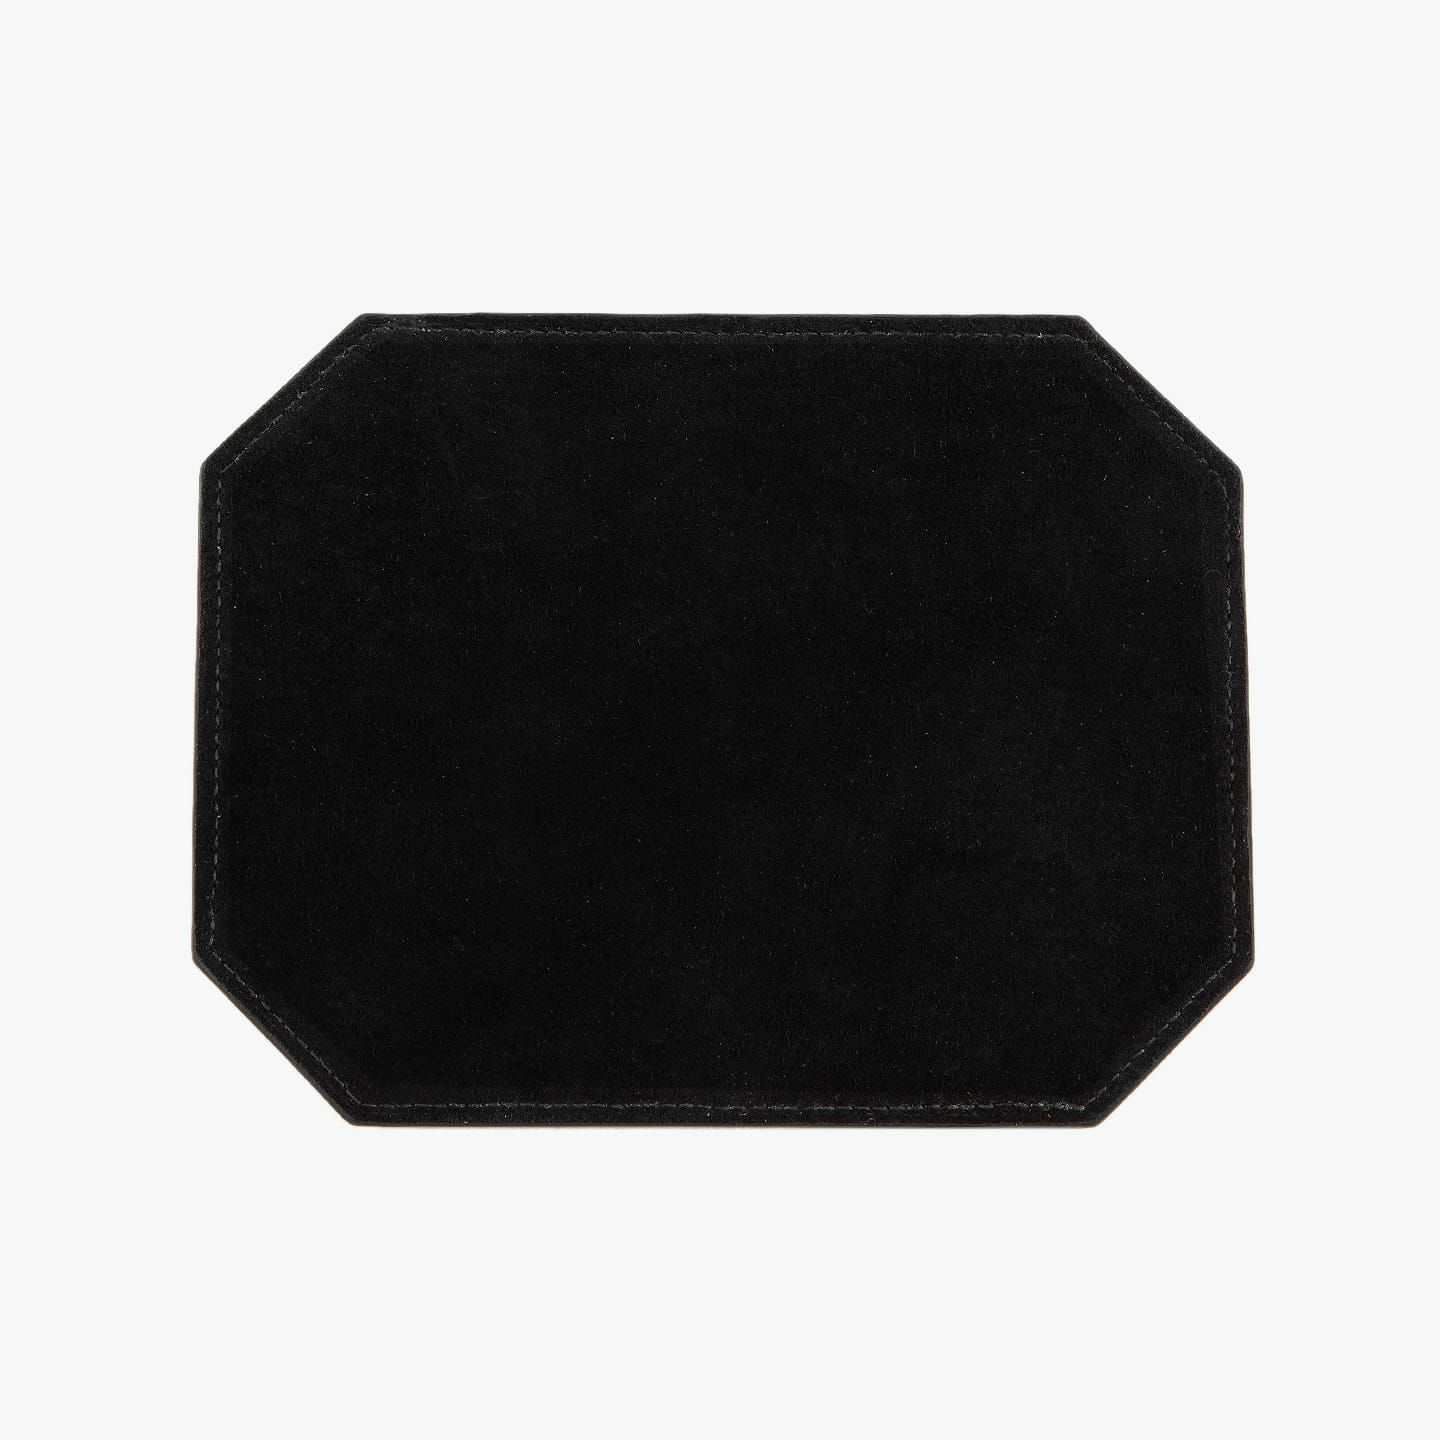 表（ダービー）：Black、裏（ピッグスエード）：Black、糸色：Black、ロゴ刻印：箔押し・Silver